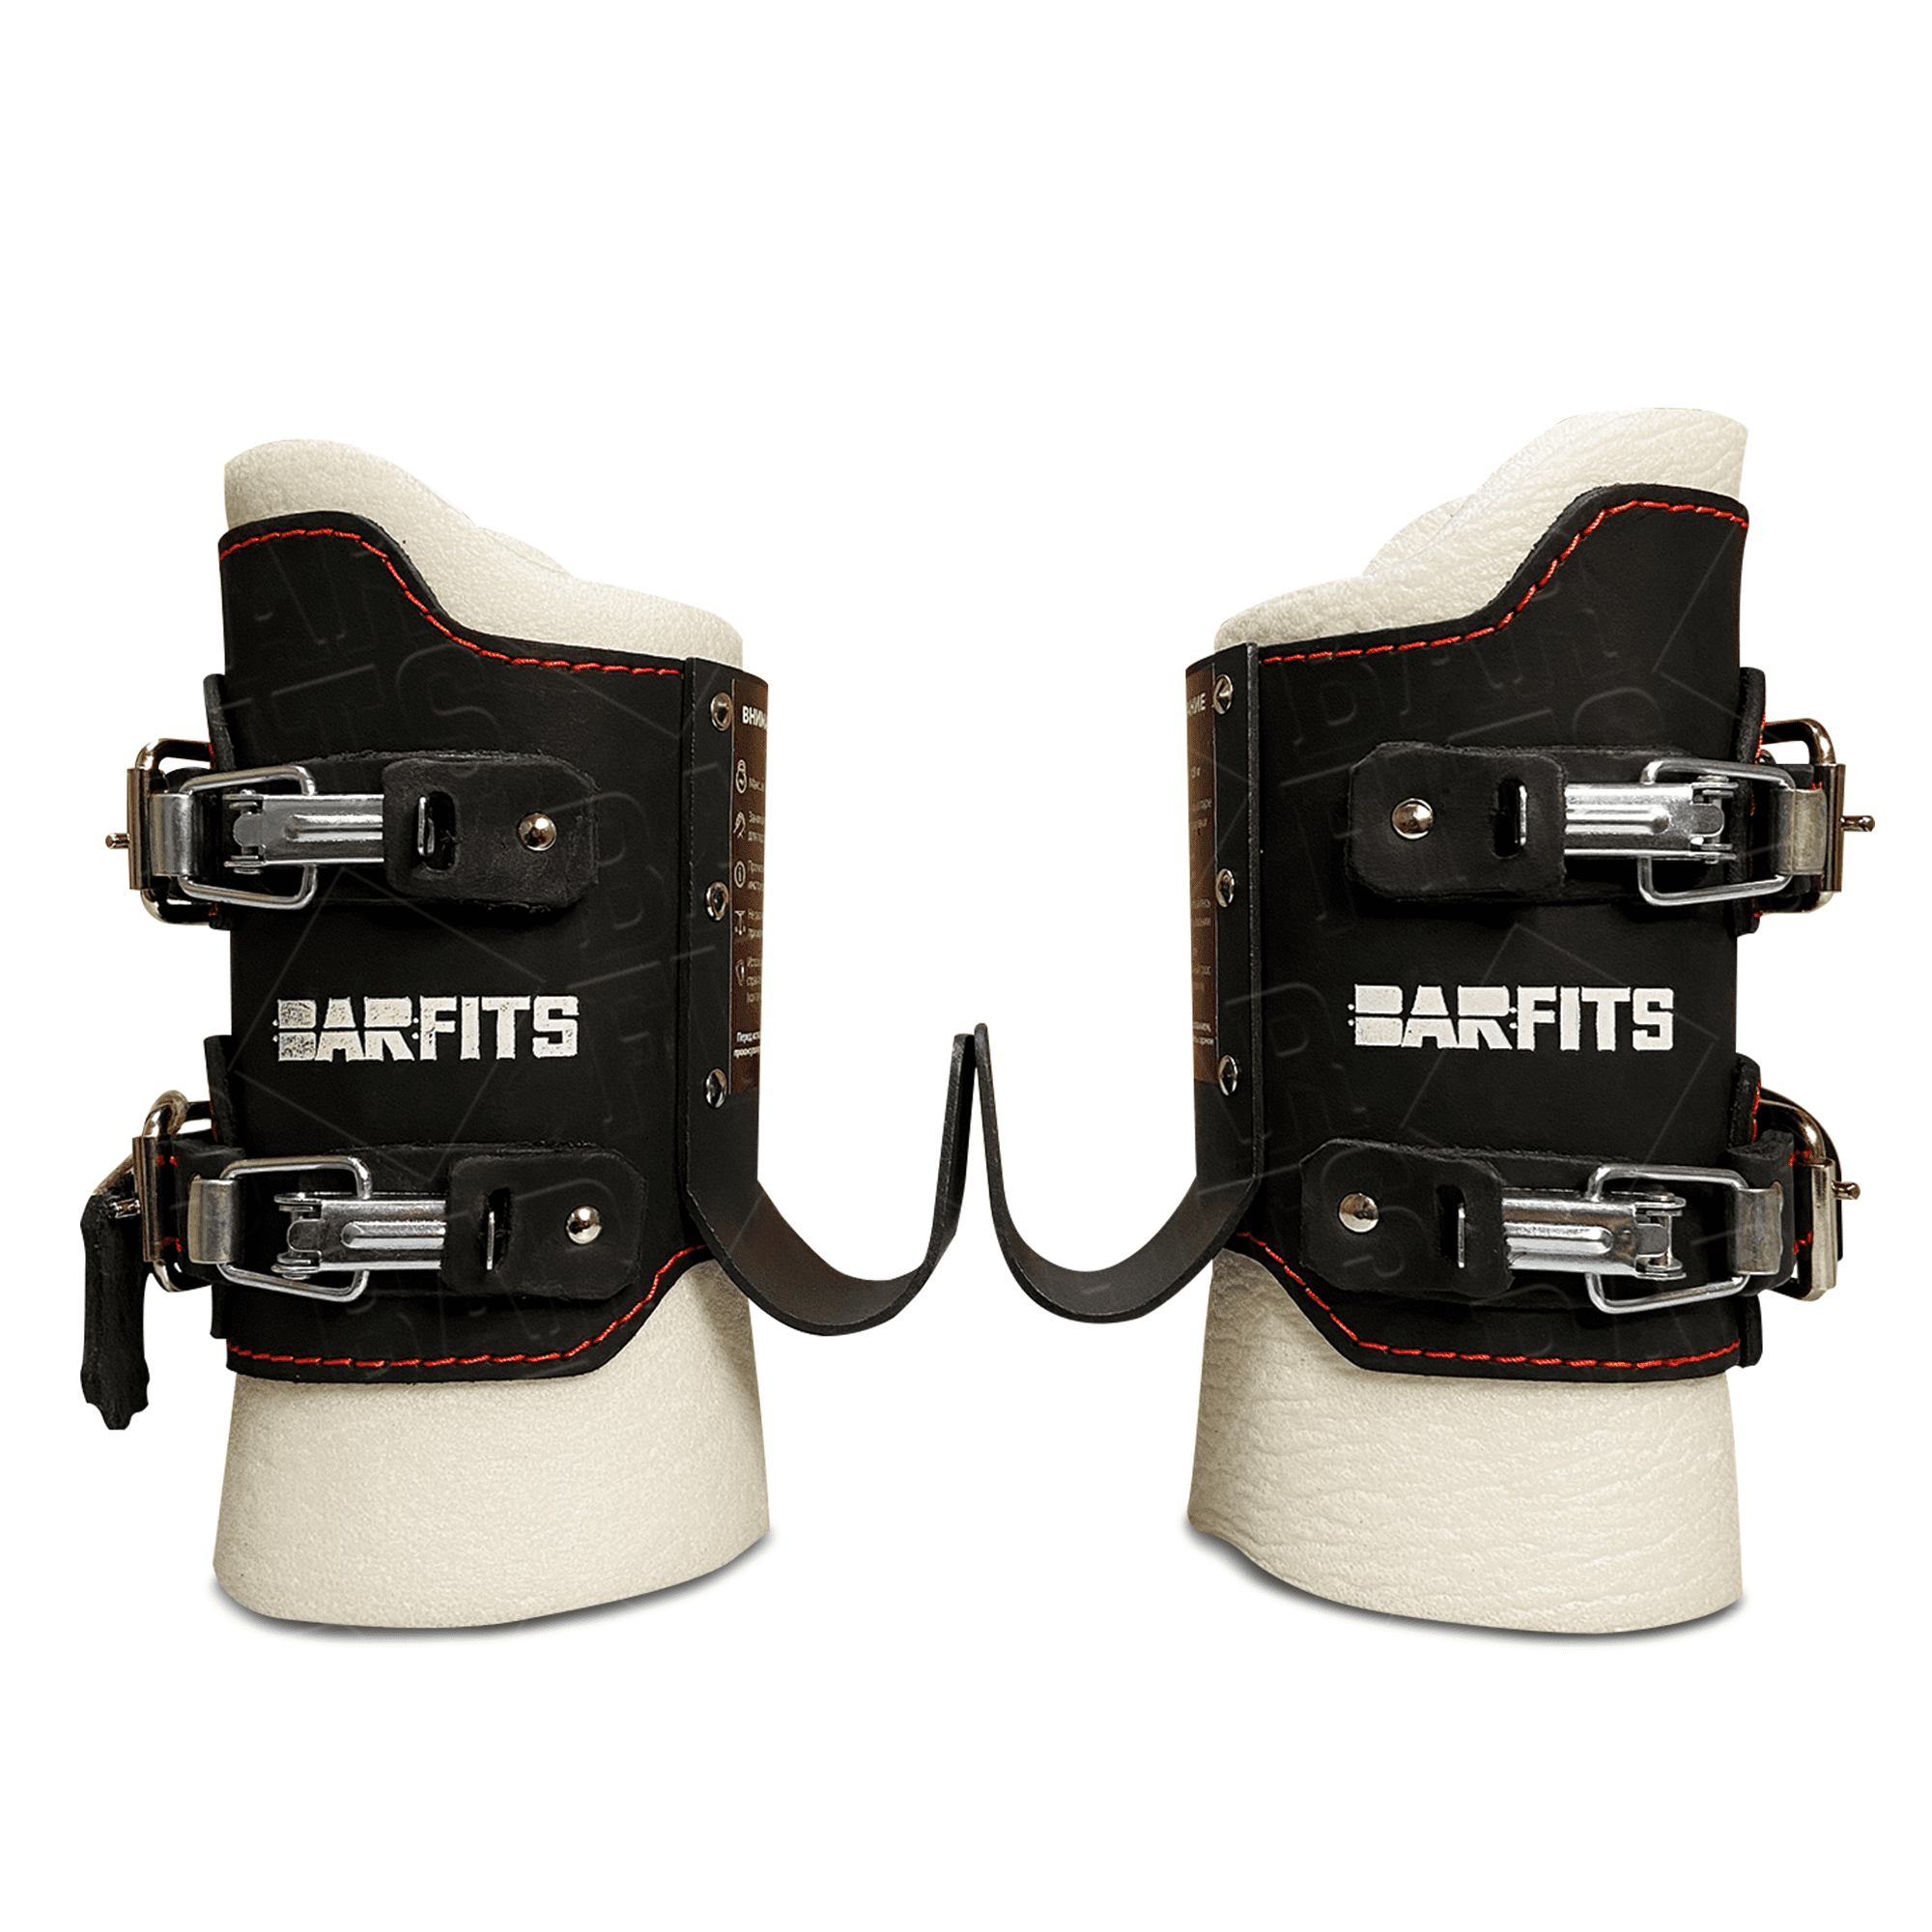 Гравитационные ботинки BARFITS COMFORT (до 110 кг), цена 4 900 руб. винтернет-магазине BarFits